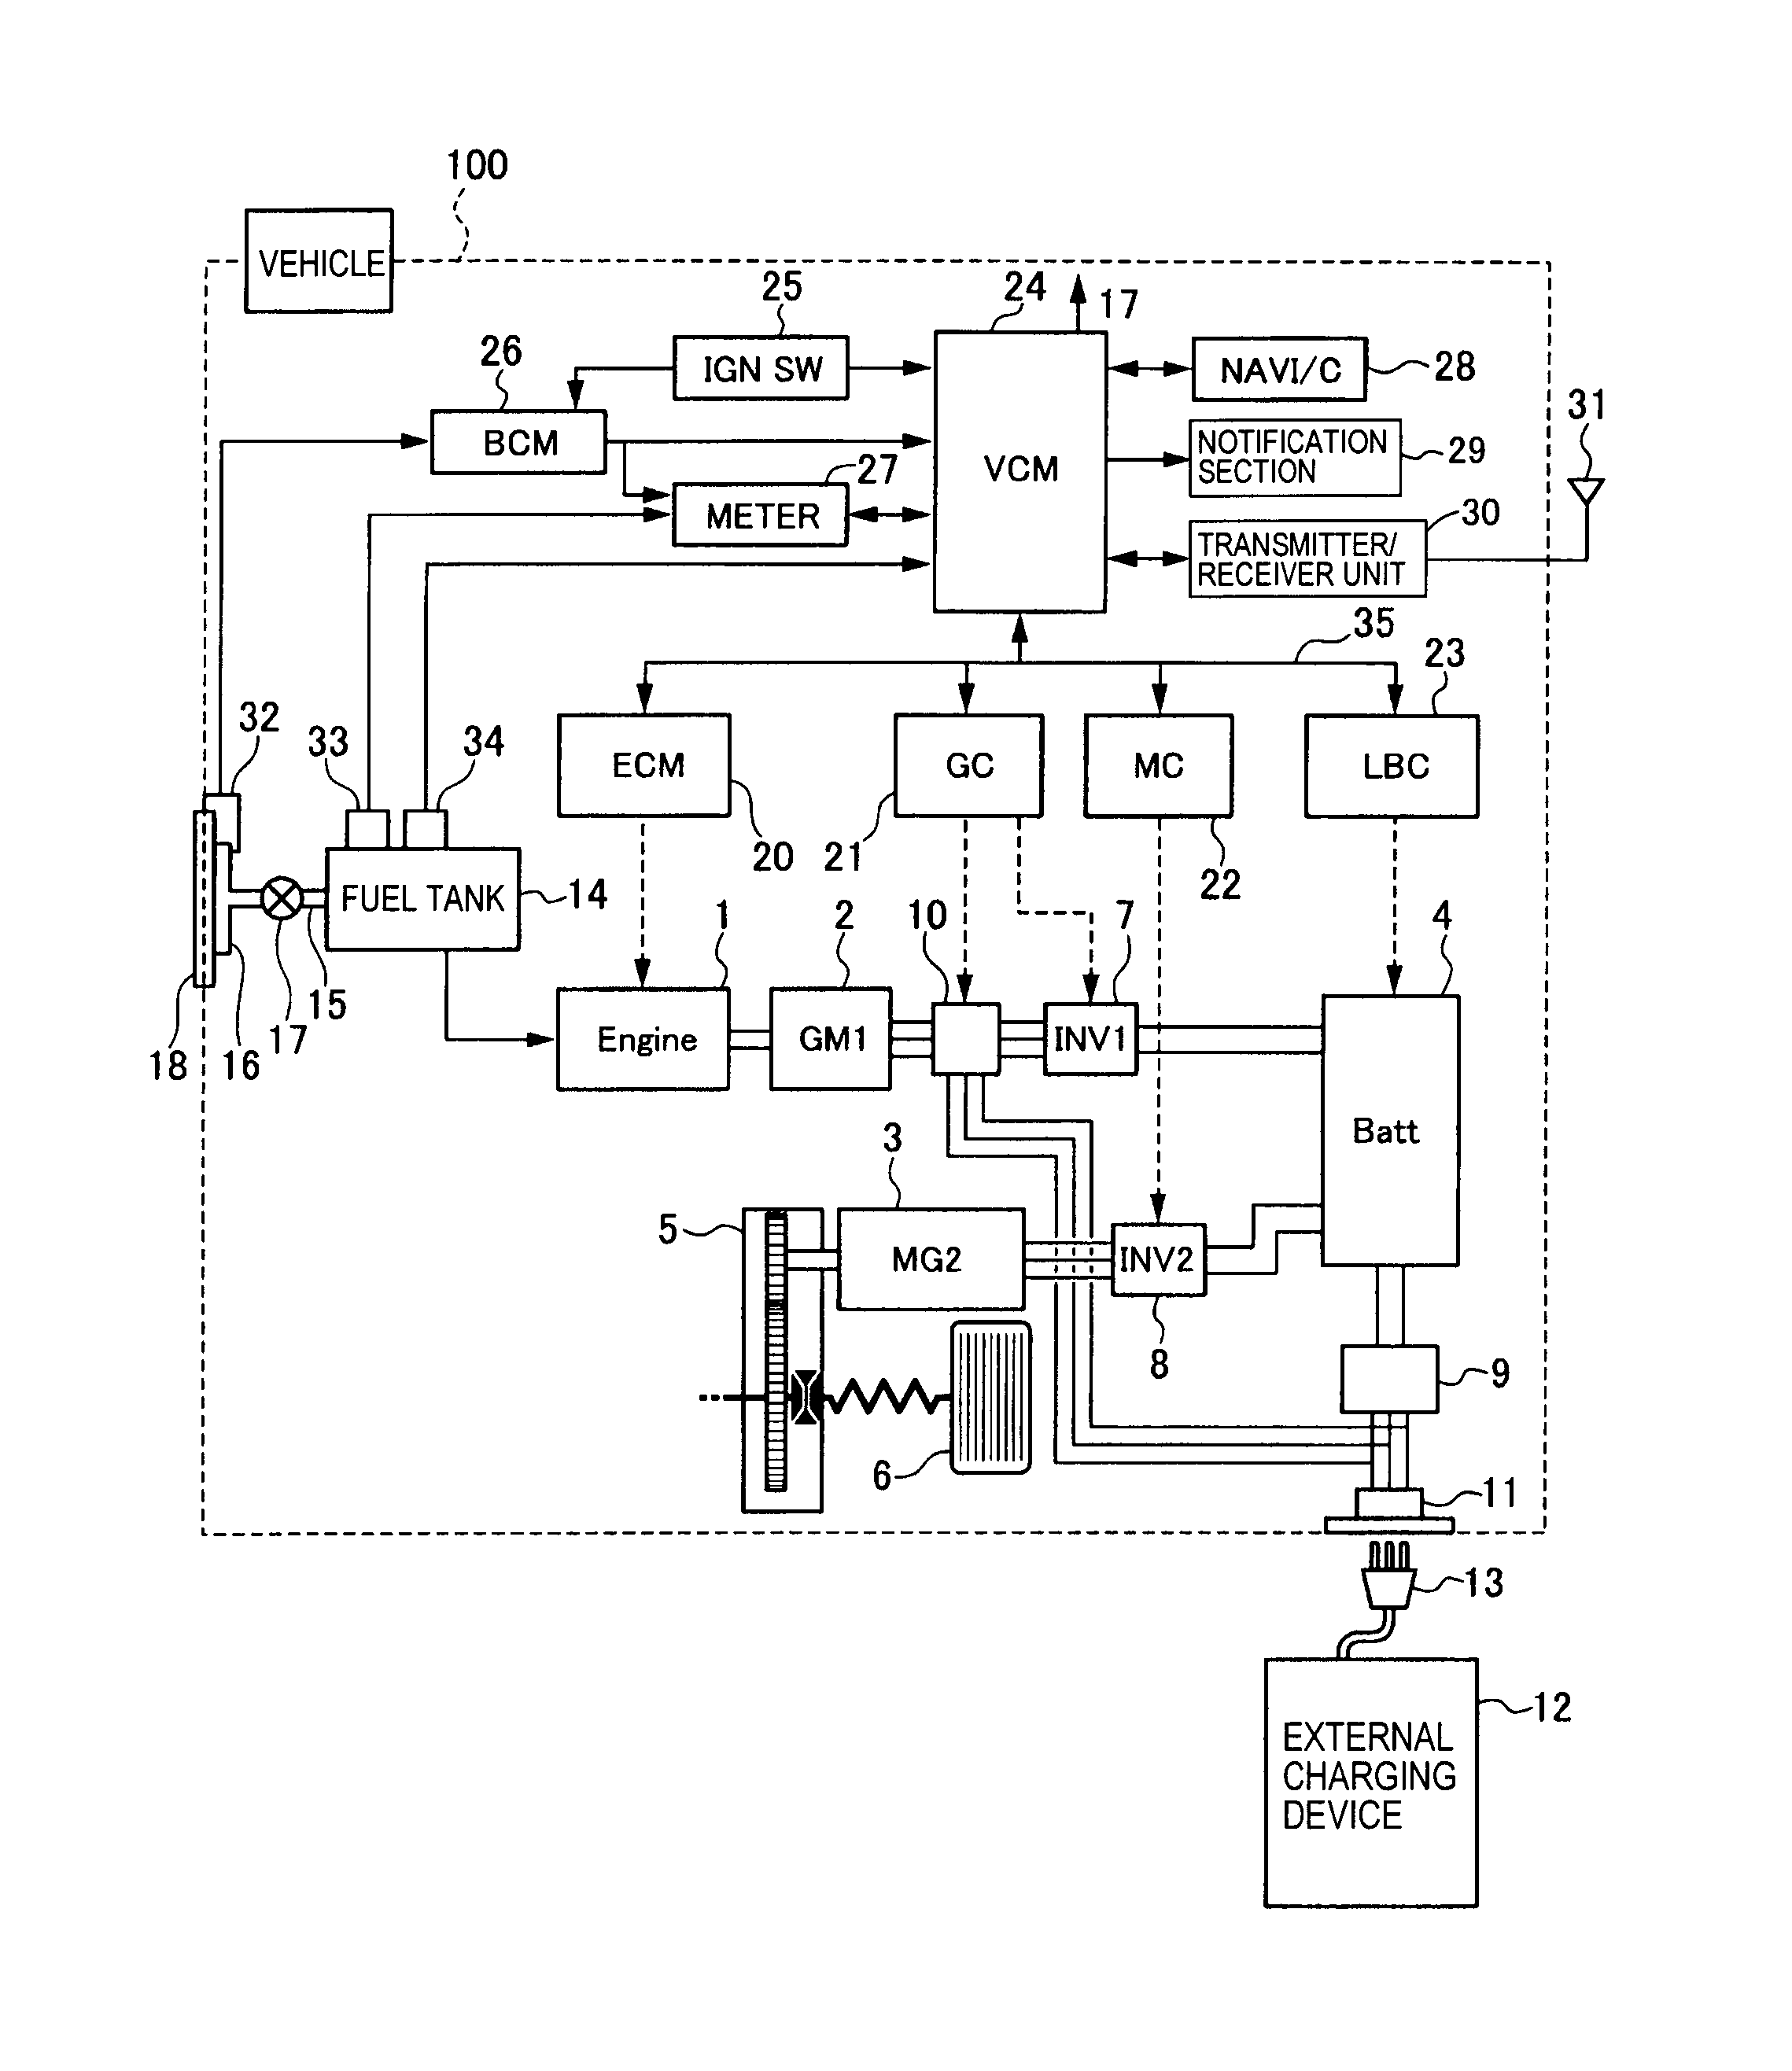 kib monitor wiring diagram